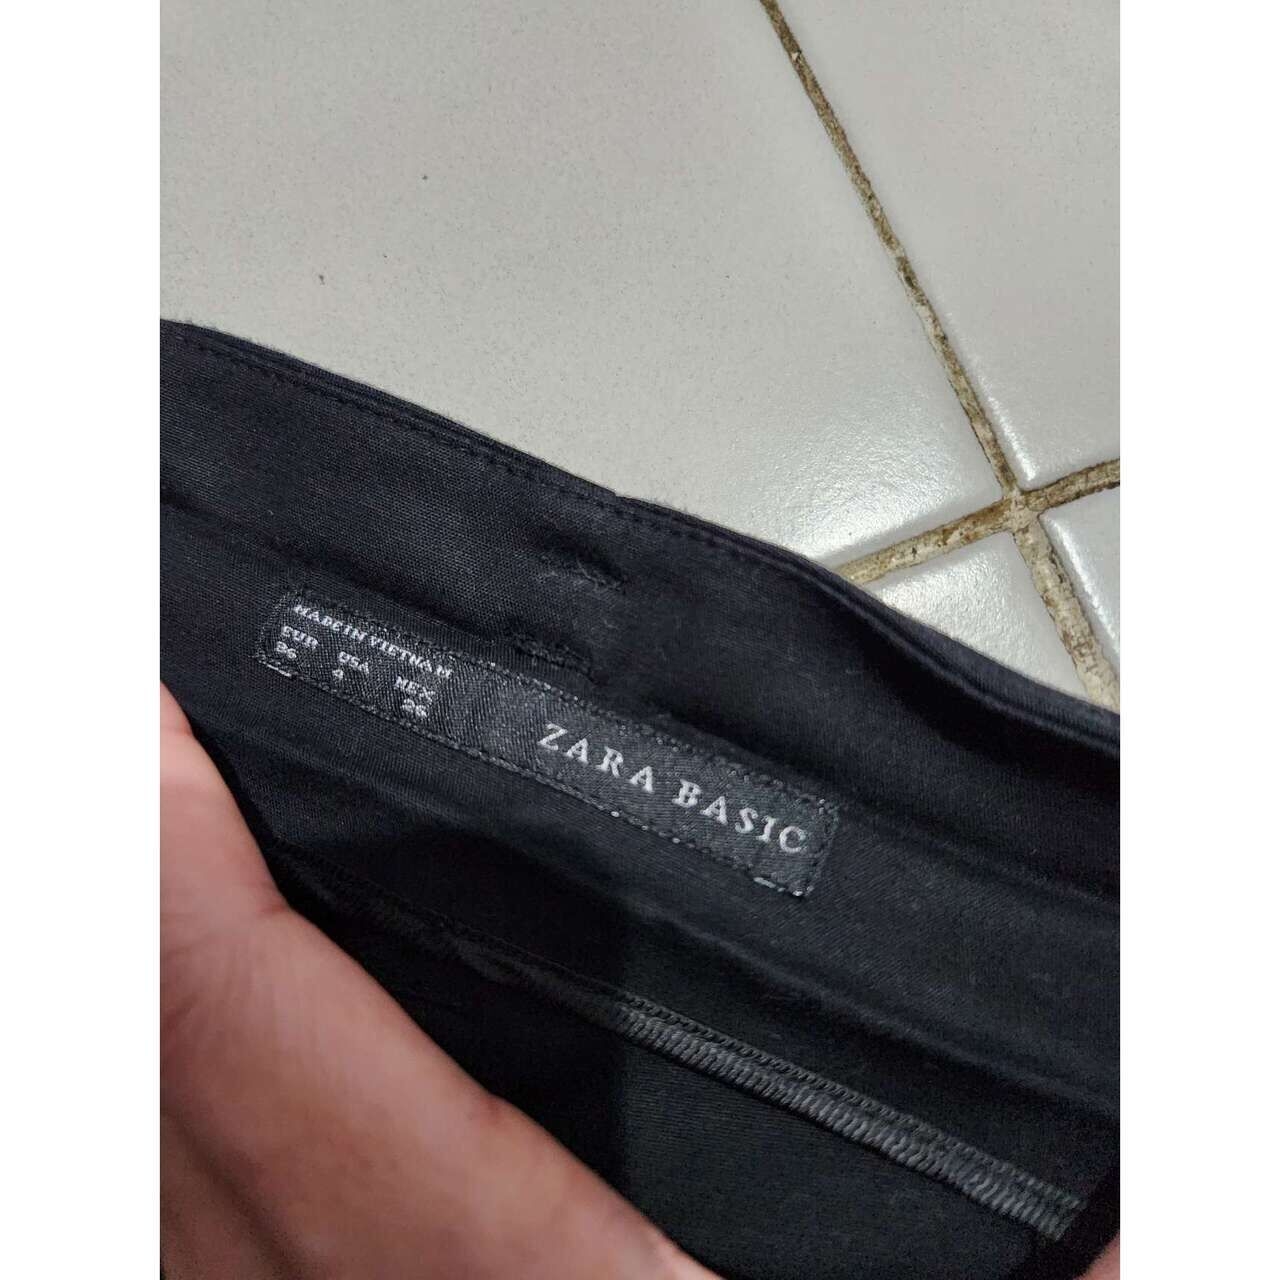 Zara Black Long Pants